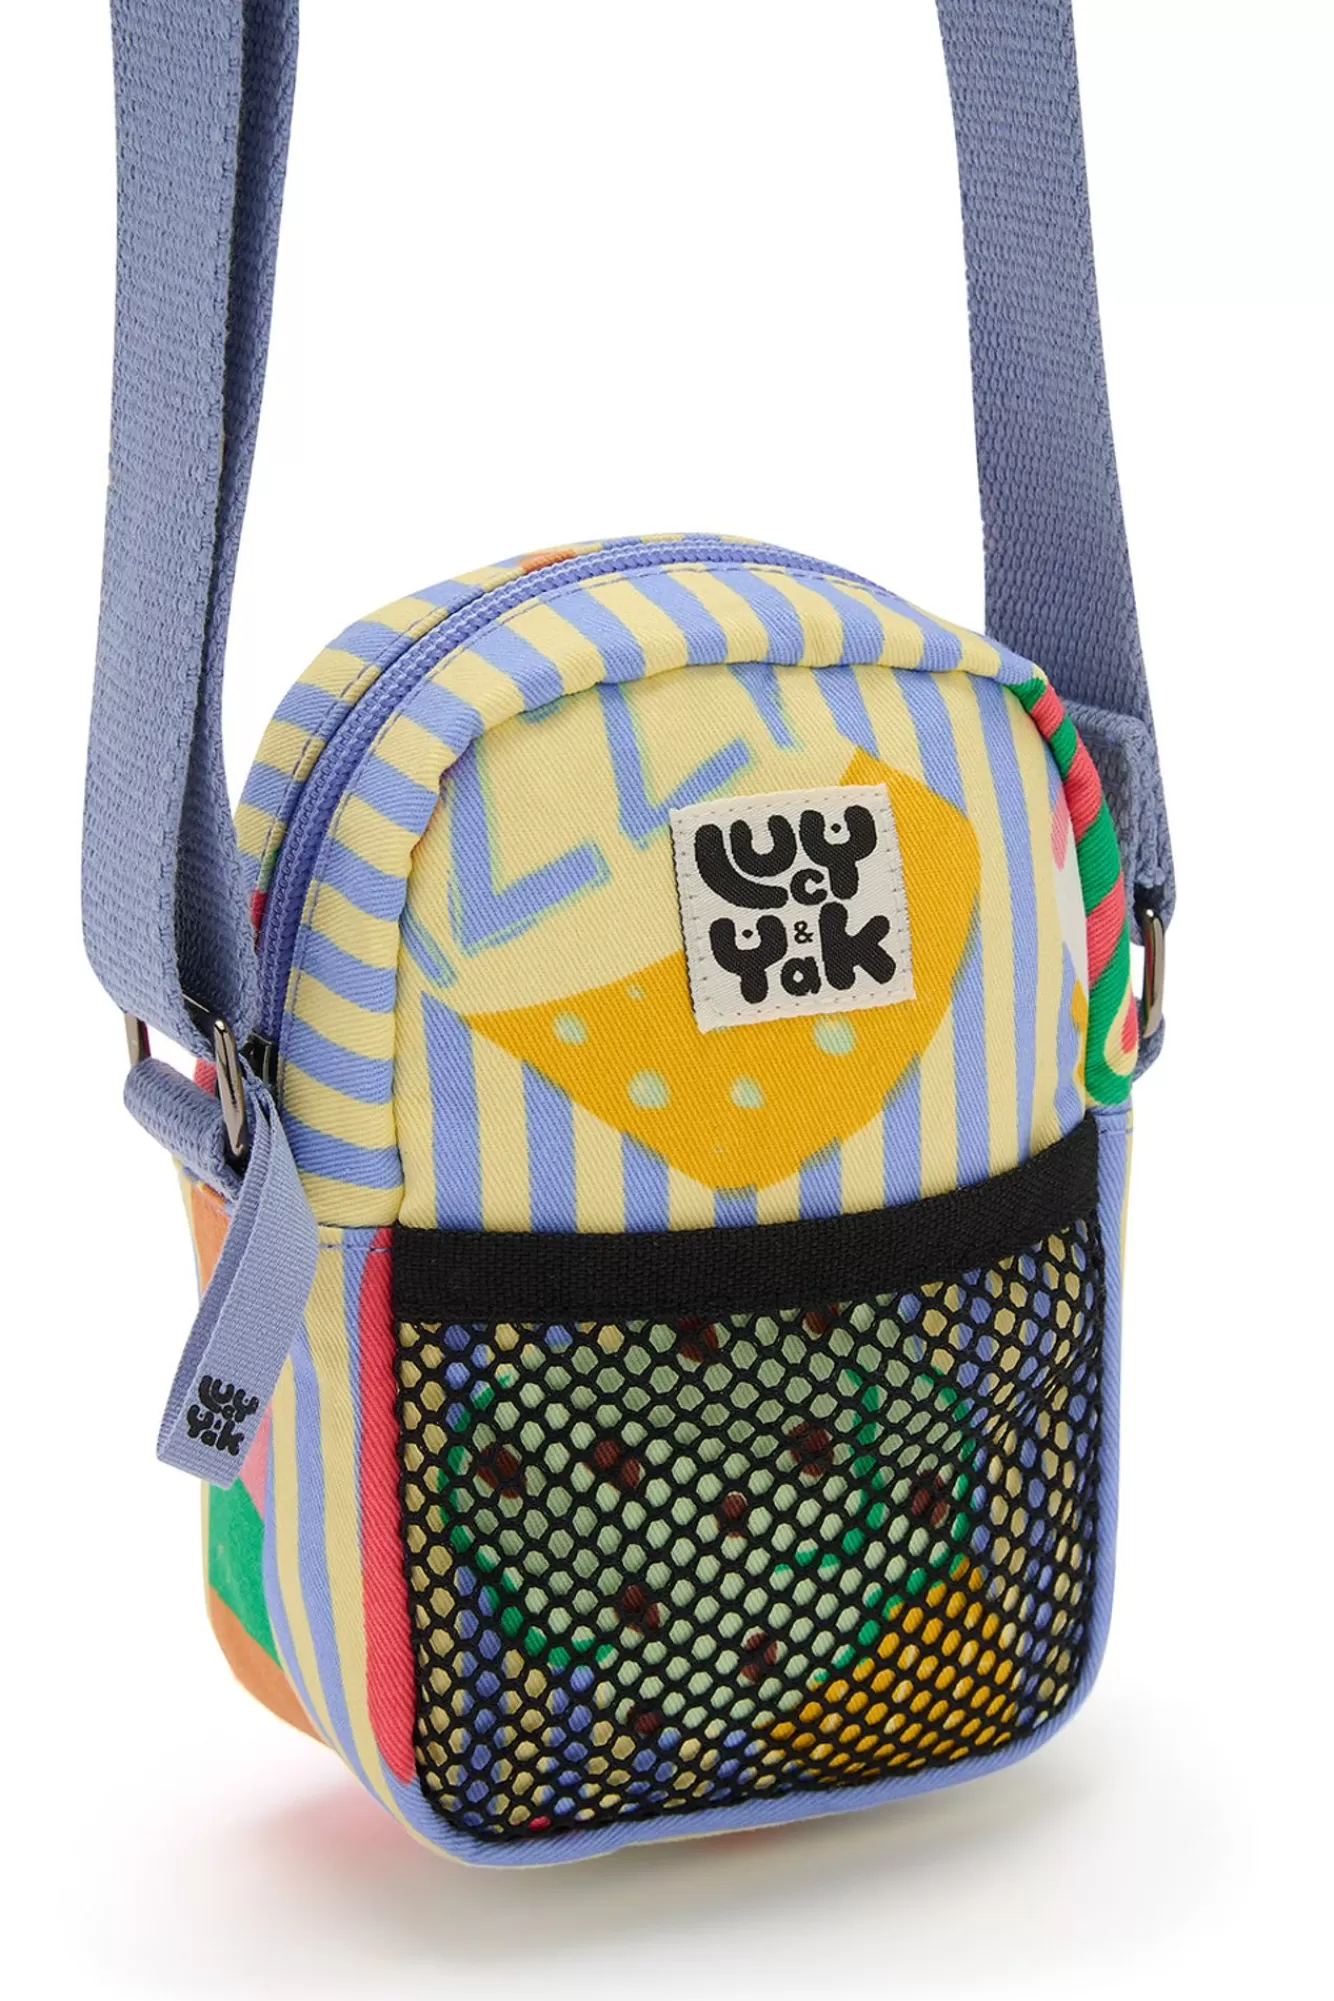 Brady Bag: Organic Twill - Lolly-Lucy & Yak Flash Sale